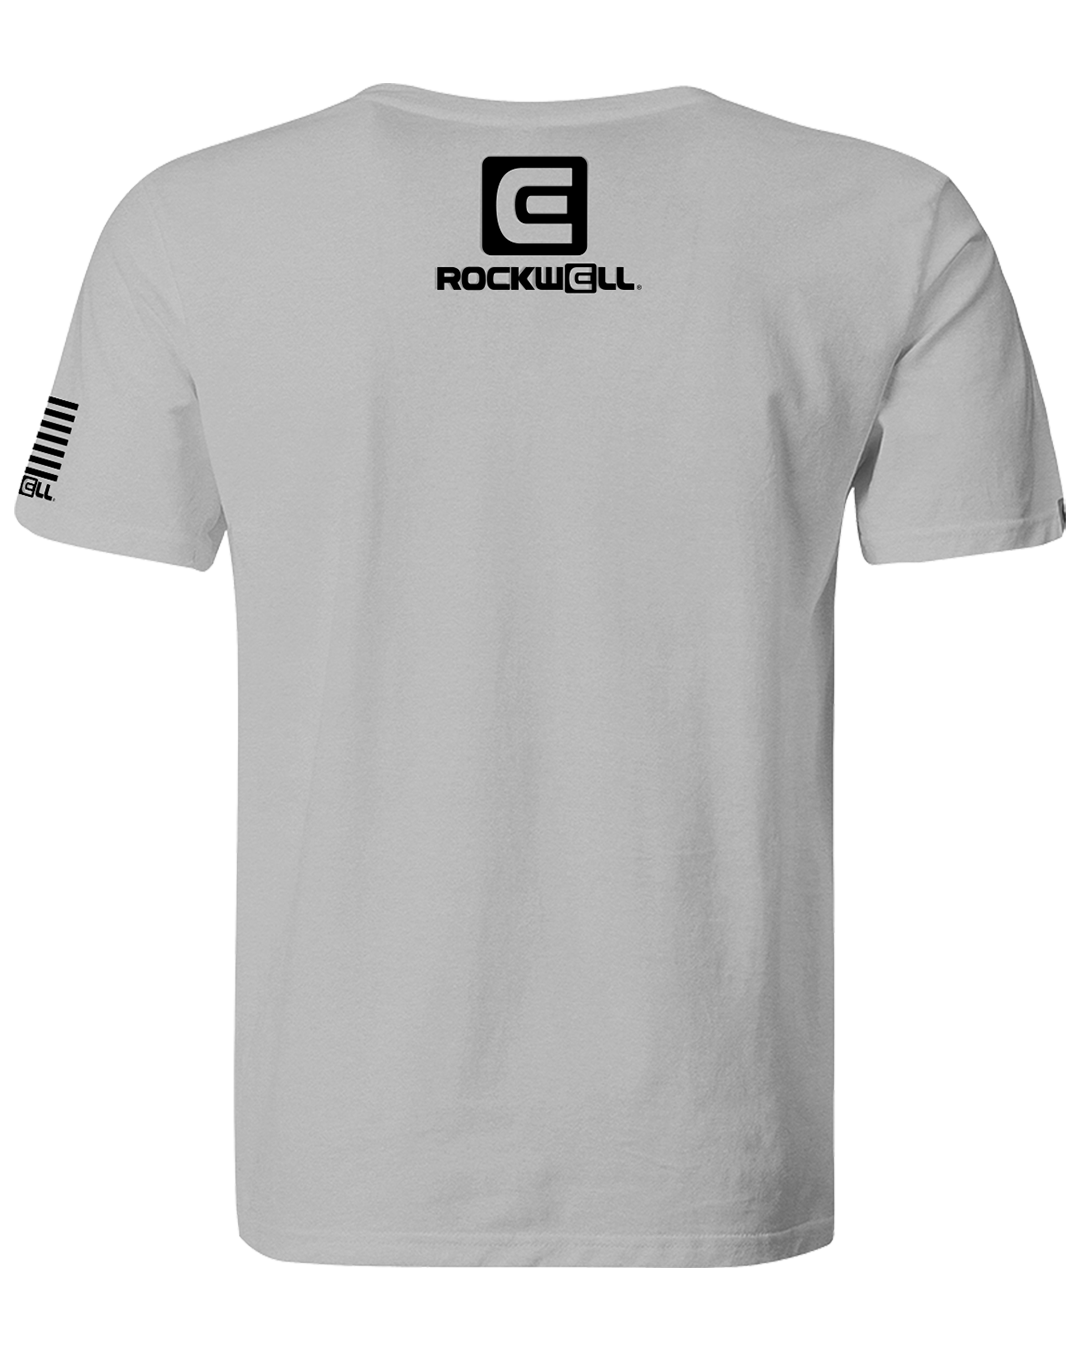 back of og gray rockwell t shirt. rockwell stacked logo on the top. rockwell flag logo on left sleeve.